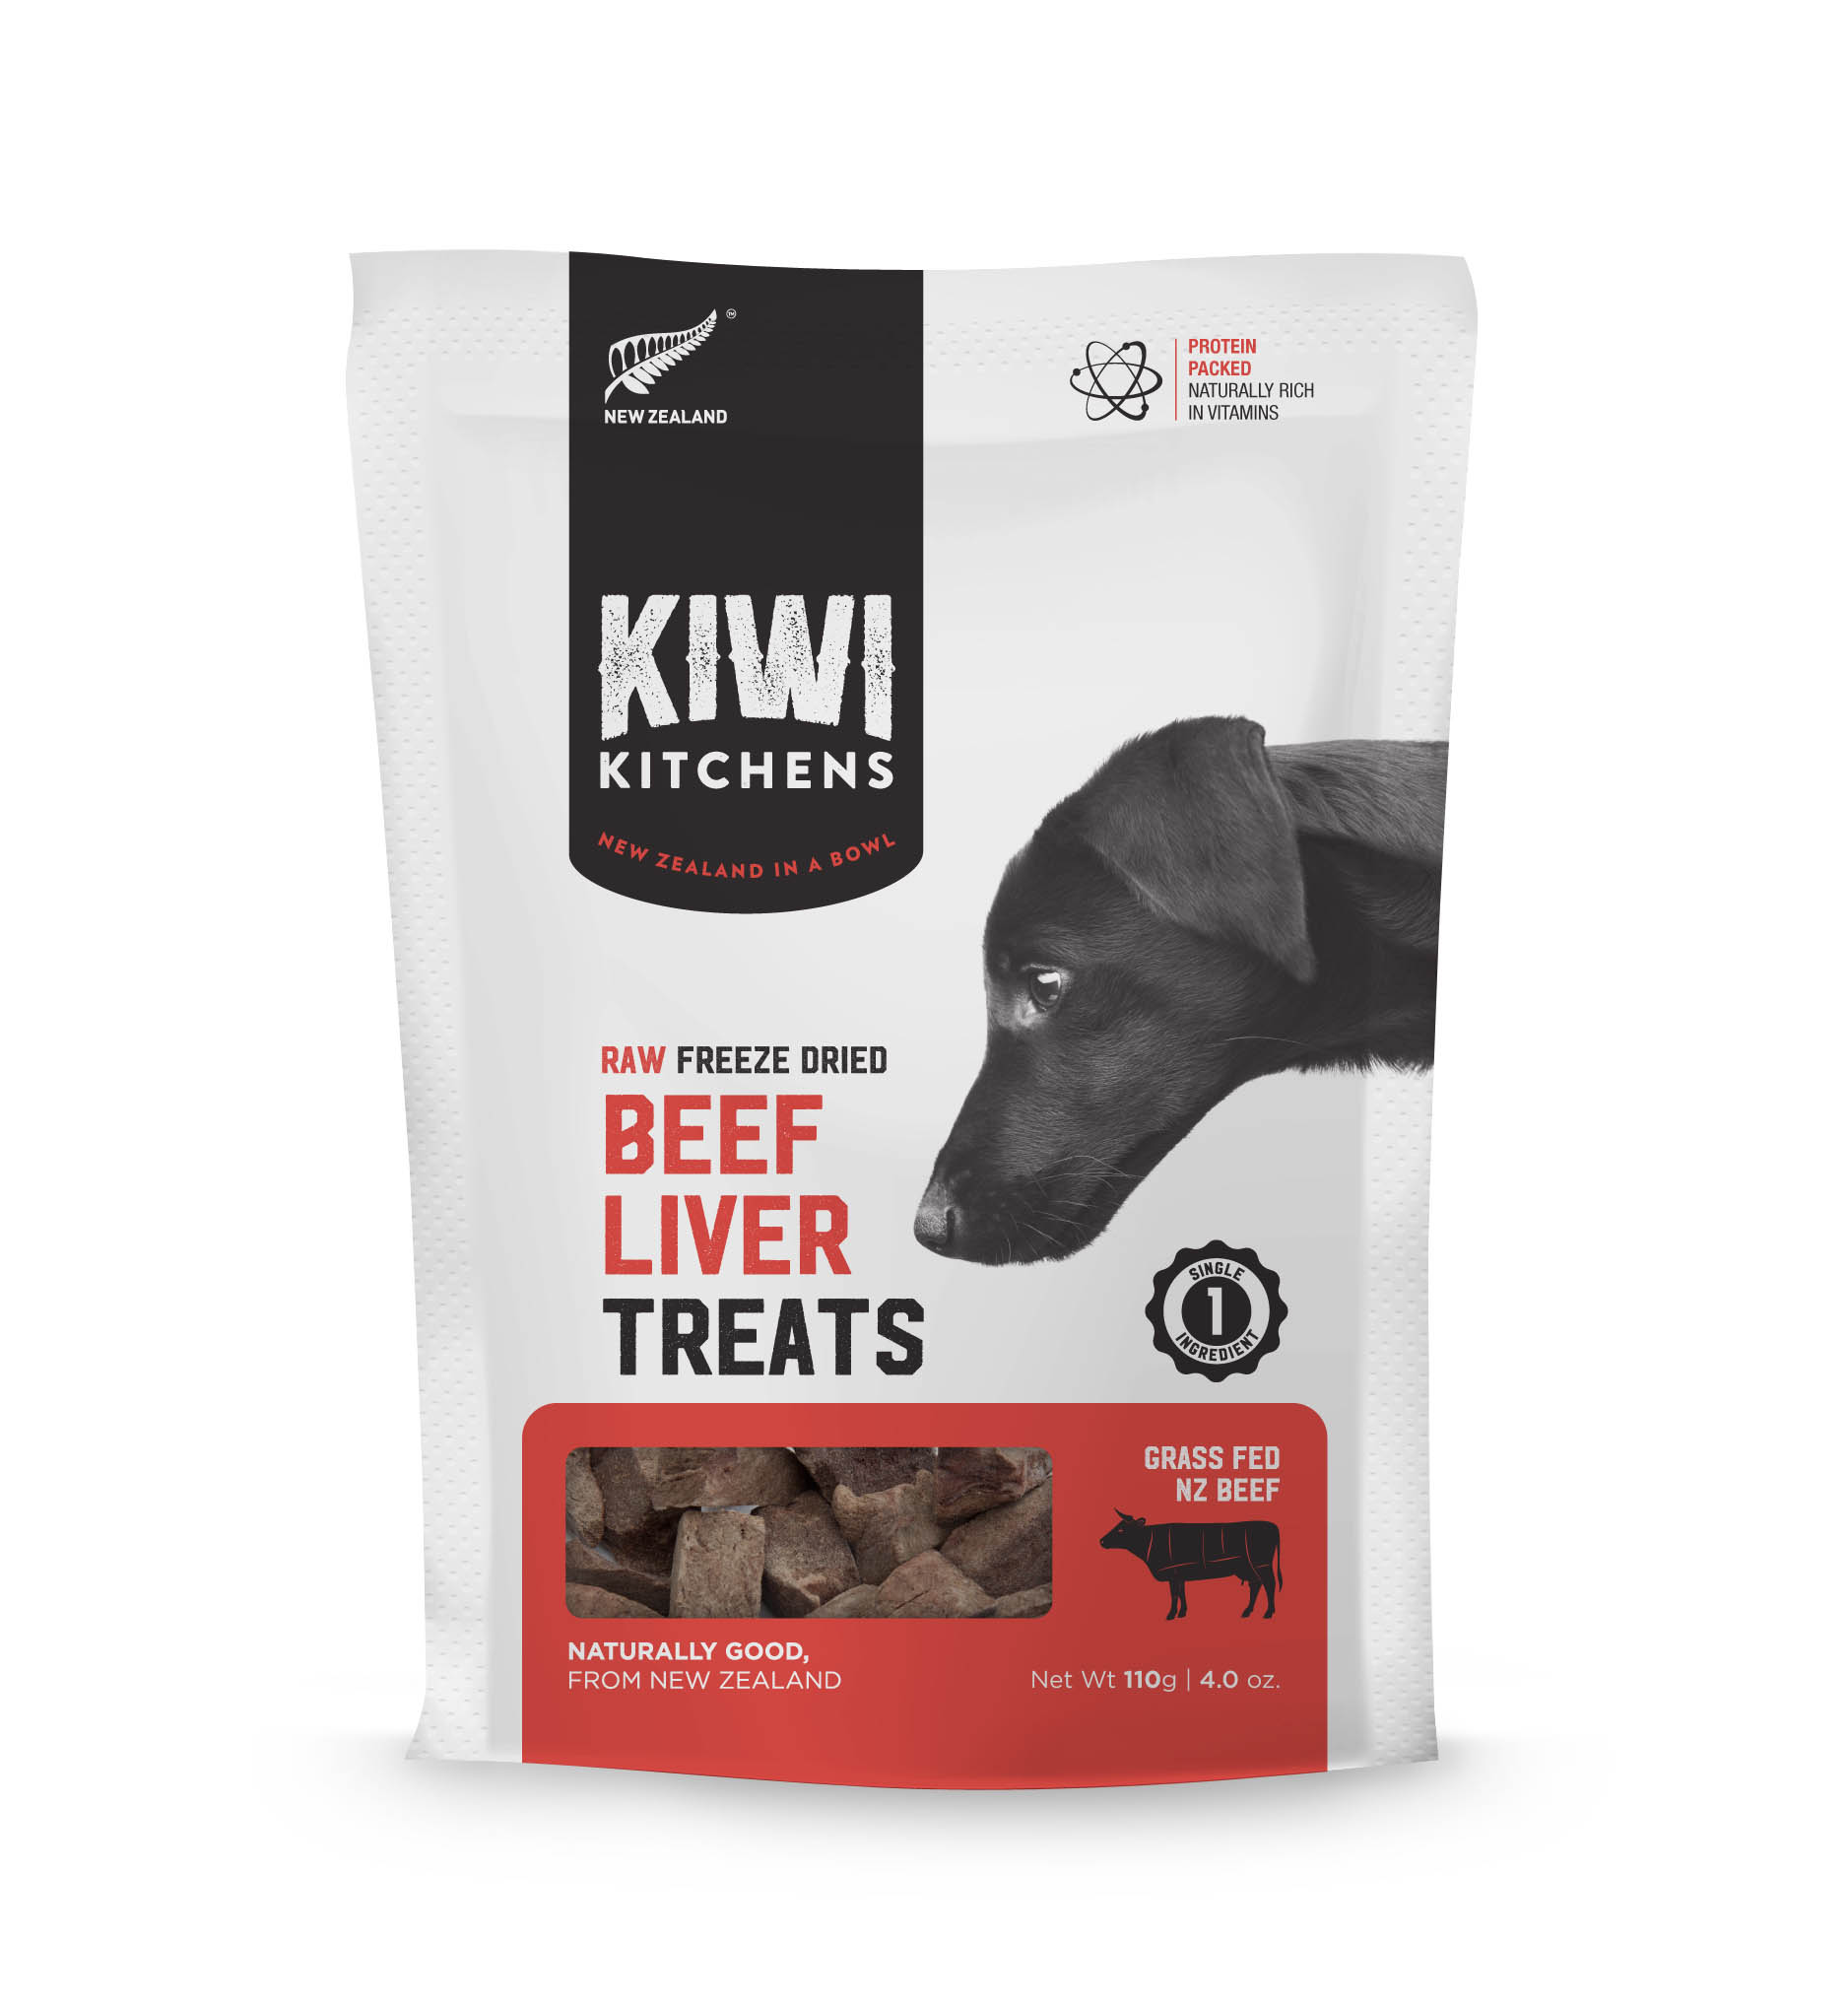 奇異廚房 純牛肝
Kiwi Kitchens Treat - Beef Liver